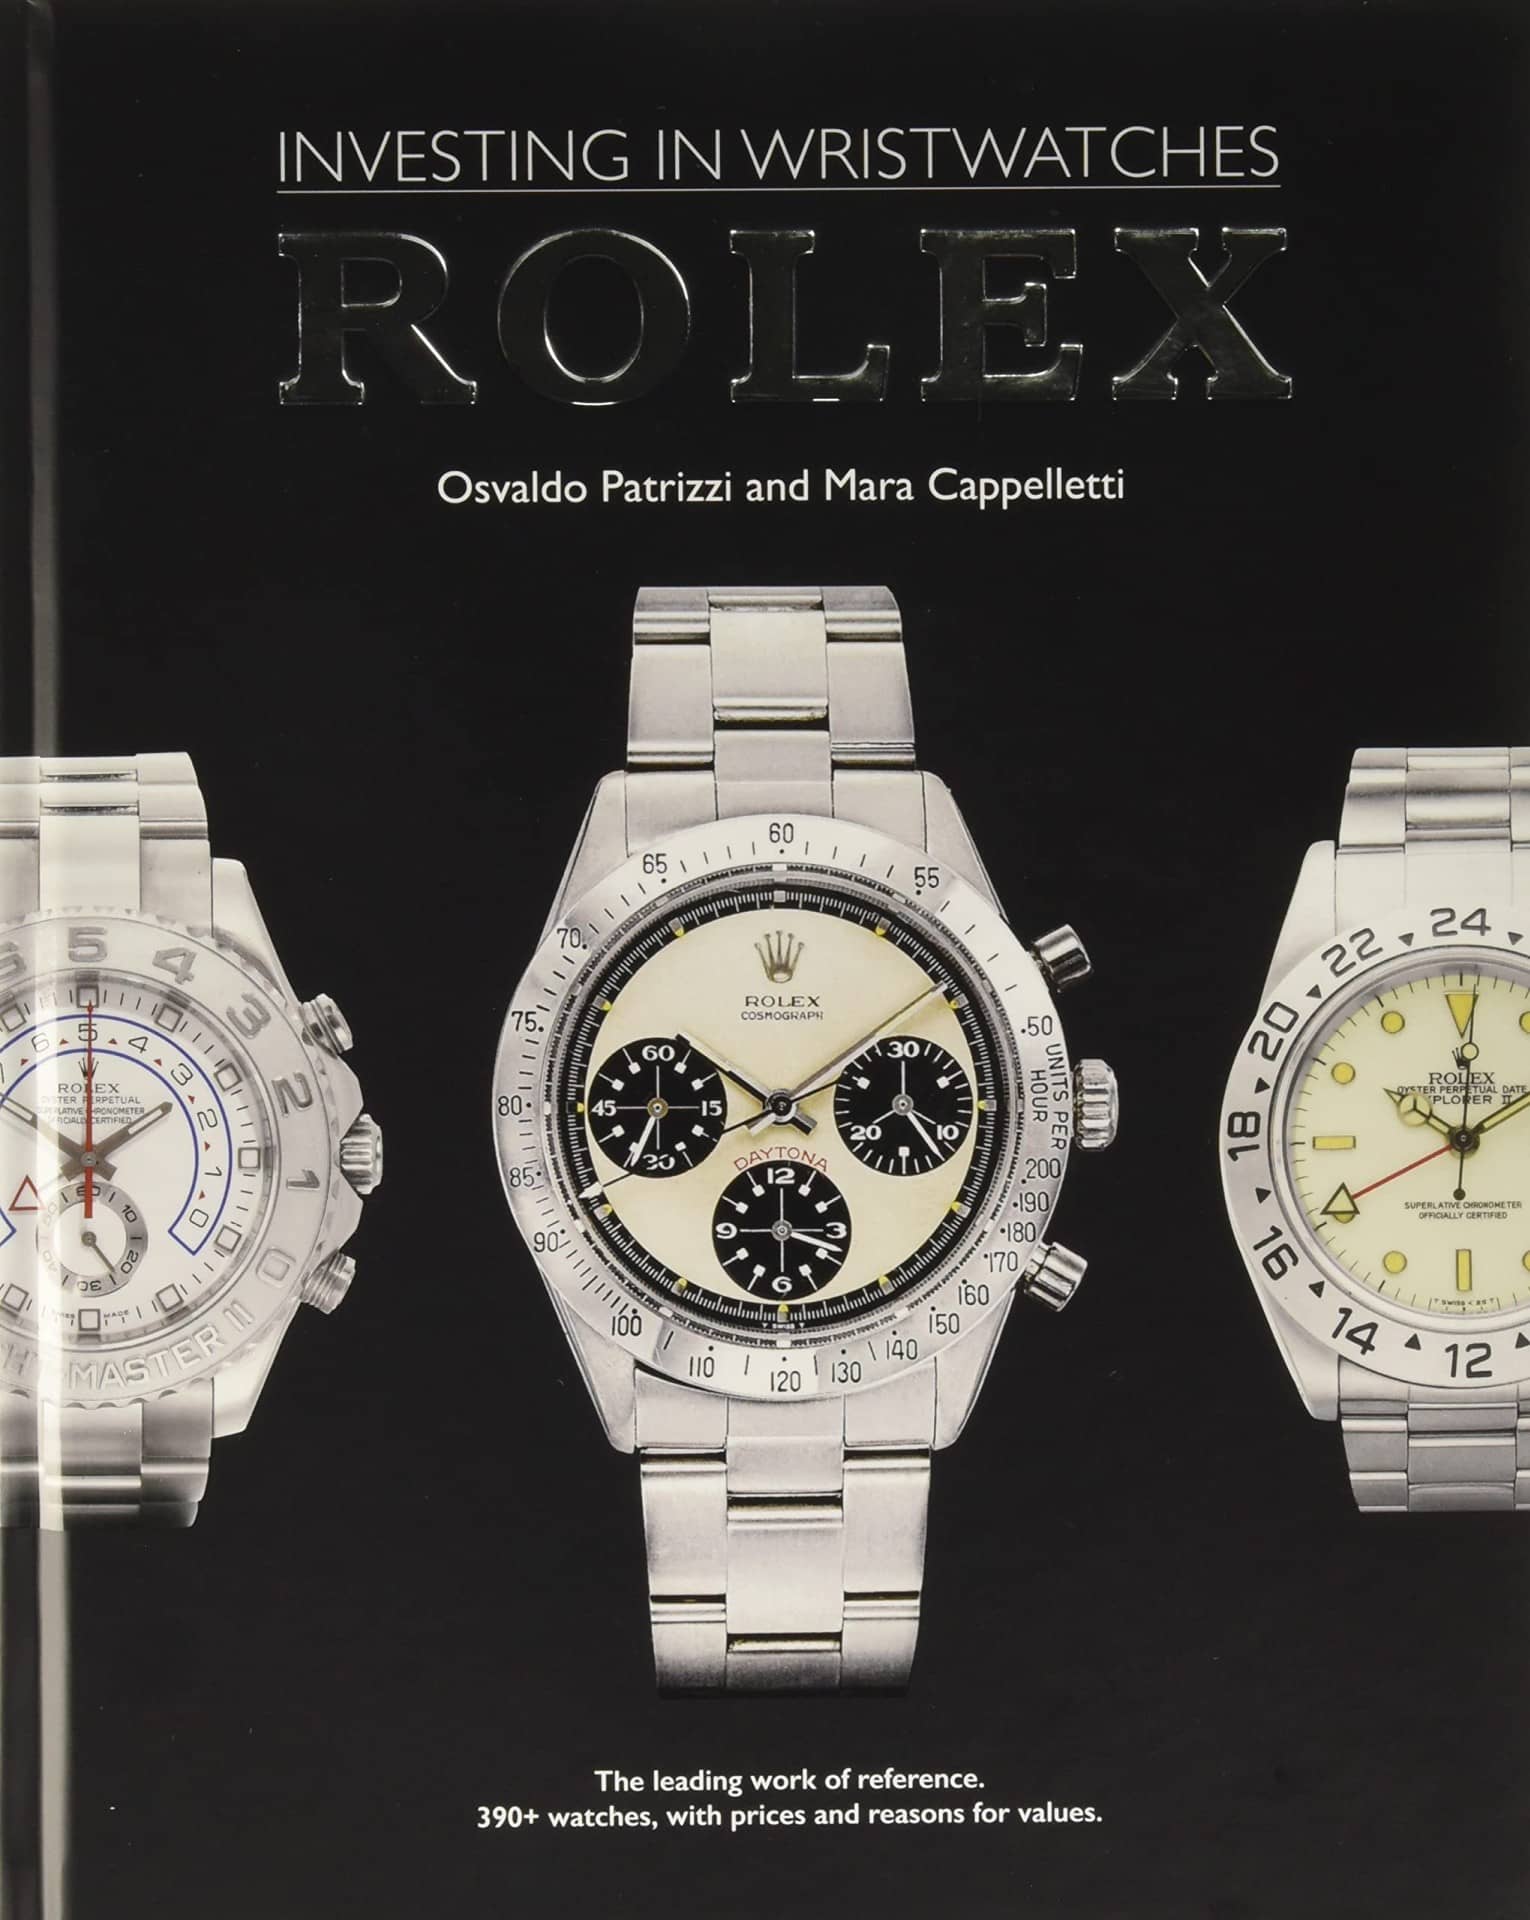 11582-rolex-investing-in-wristwatches-71051zbsx5l-jpg-71051zbsx5l